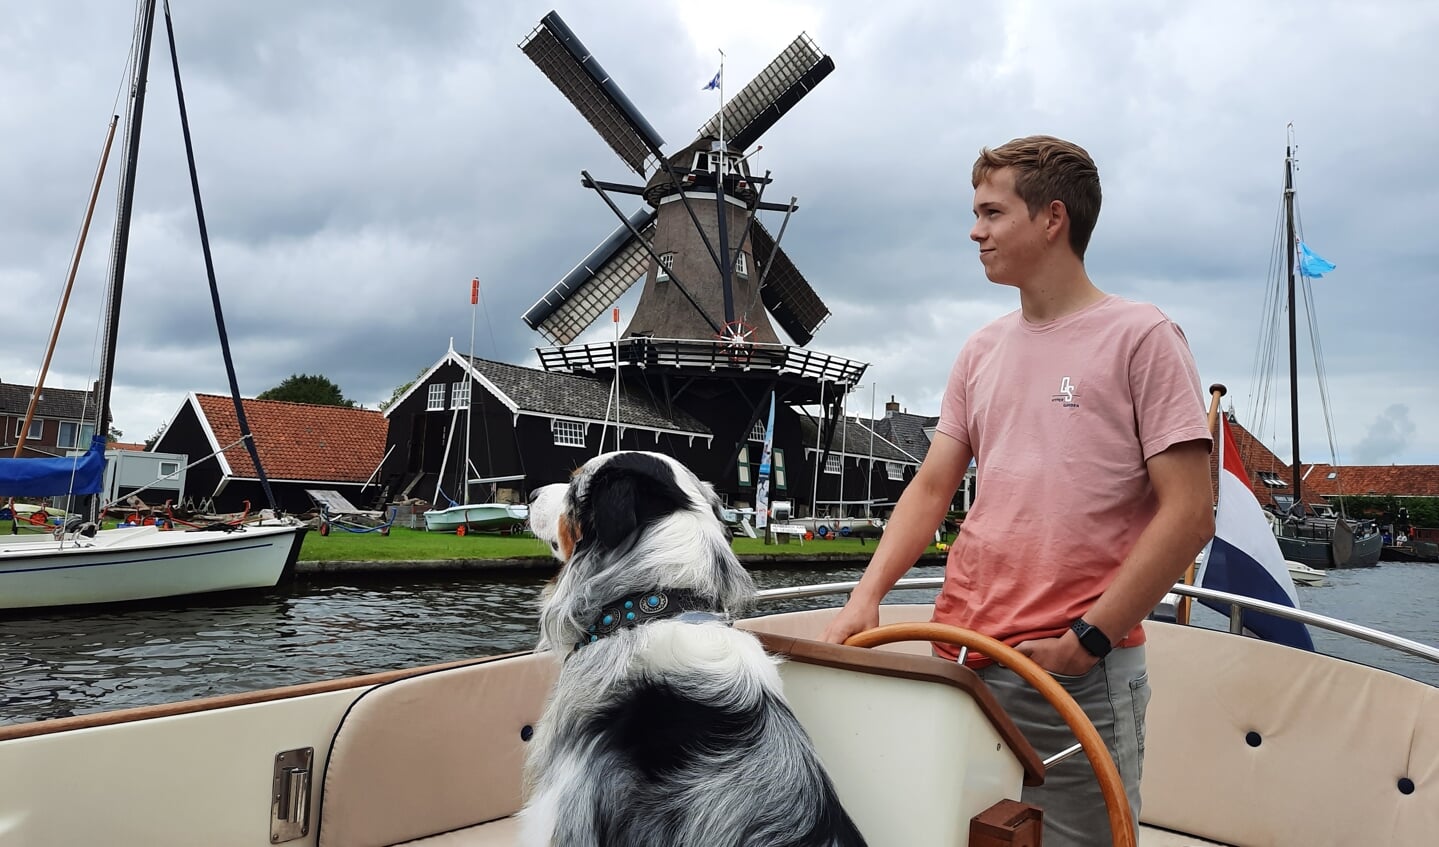 ,,Een oer Hollands plaatje. Mijn zoon Milan en onze hond Spike, varend door Woudsend. Met de Hollandse luchten, de molen, het skûtsje en de Nederlandse vlag is dit tafereel een typische foto van een vakantie in Nederland.